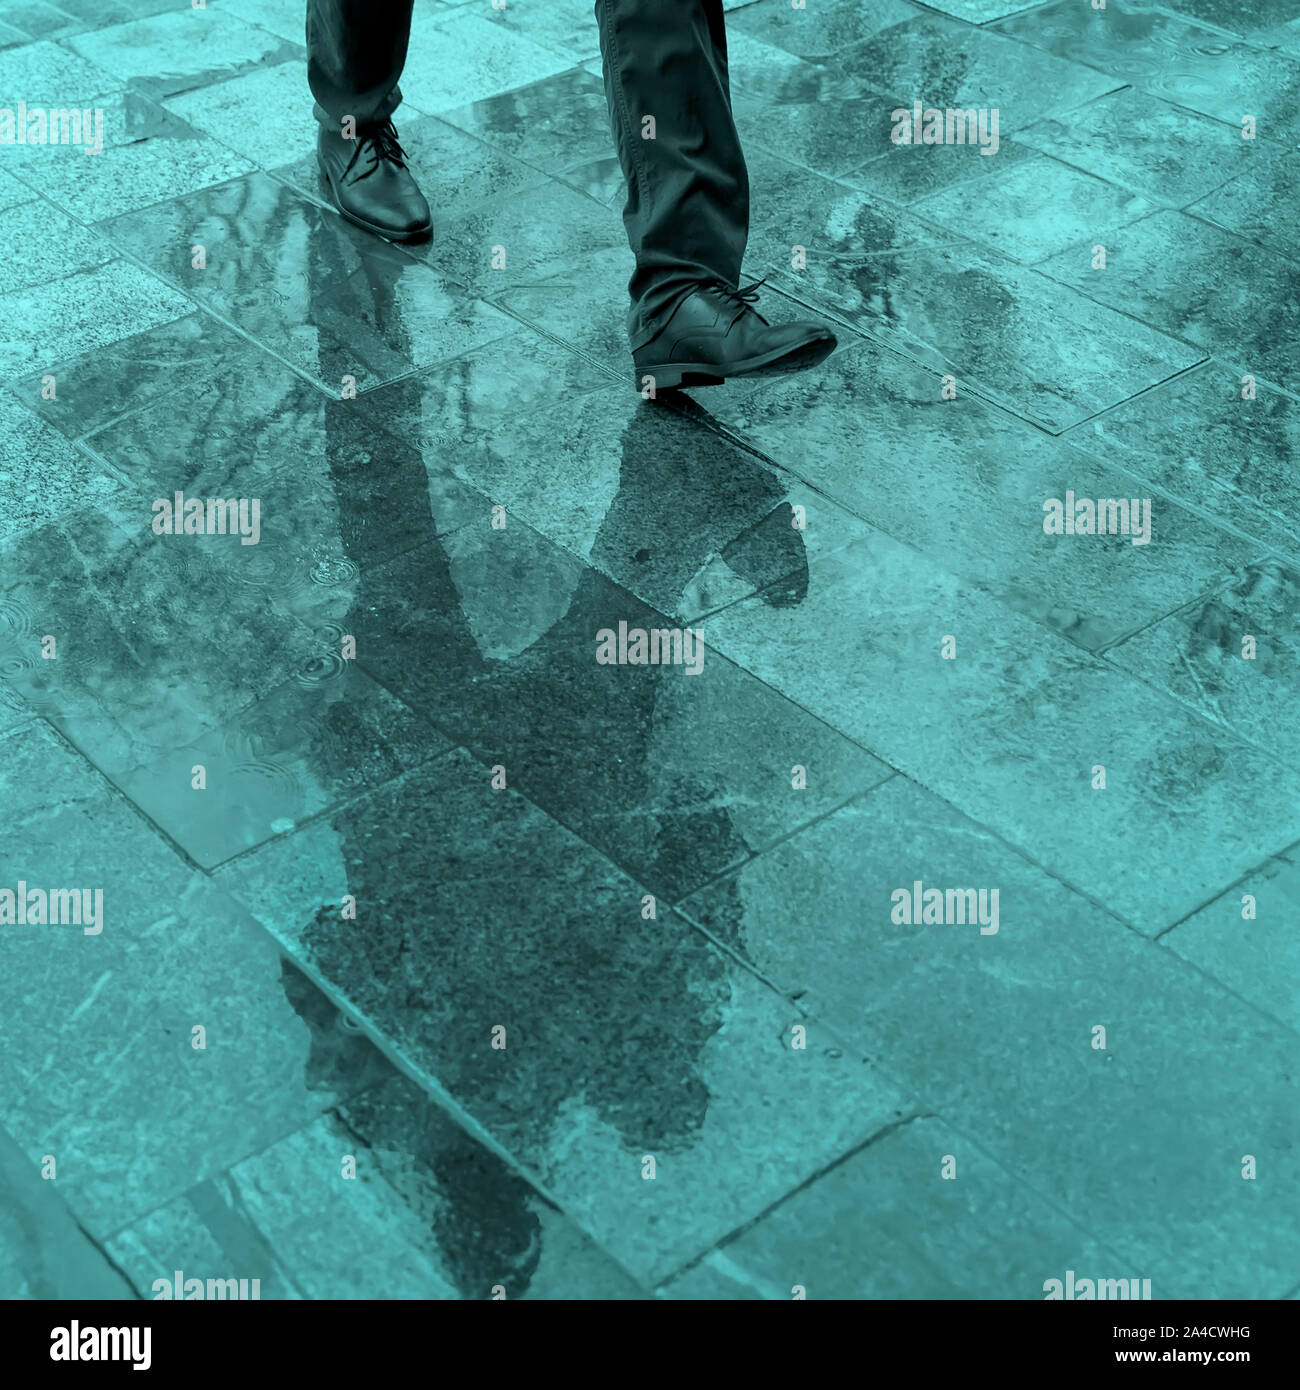 Sfocate gambe di riflessione e di ombra, silhouette di un uomo in un marciapiede in umido in una pozza camminando su un sensore pioggia Foto Stock